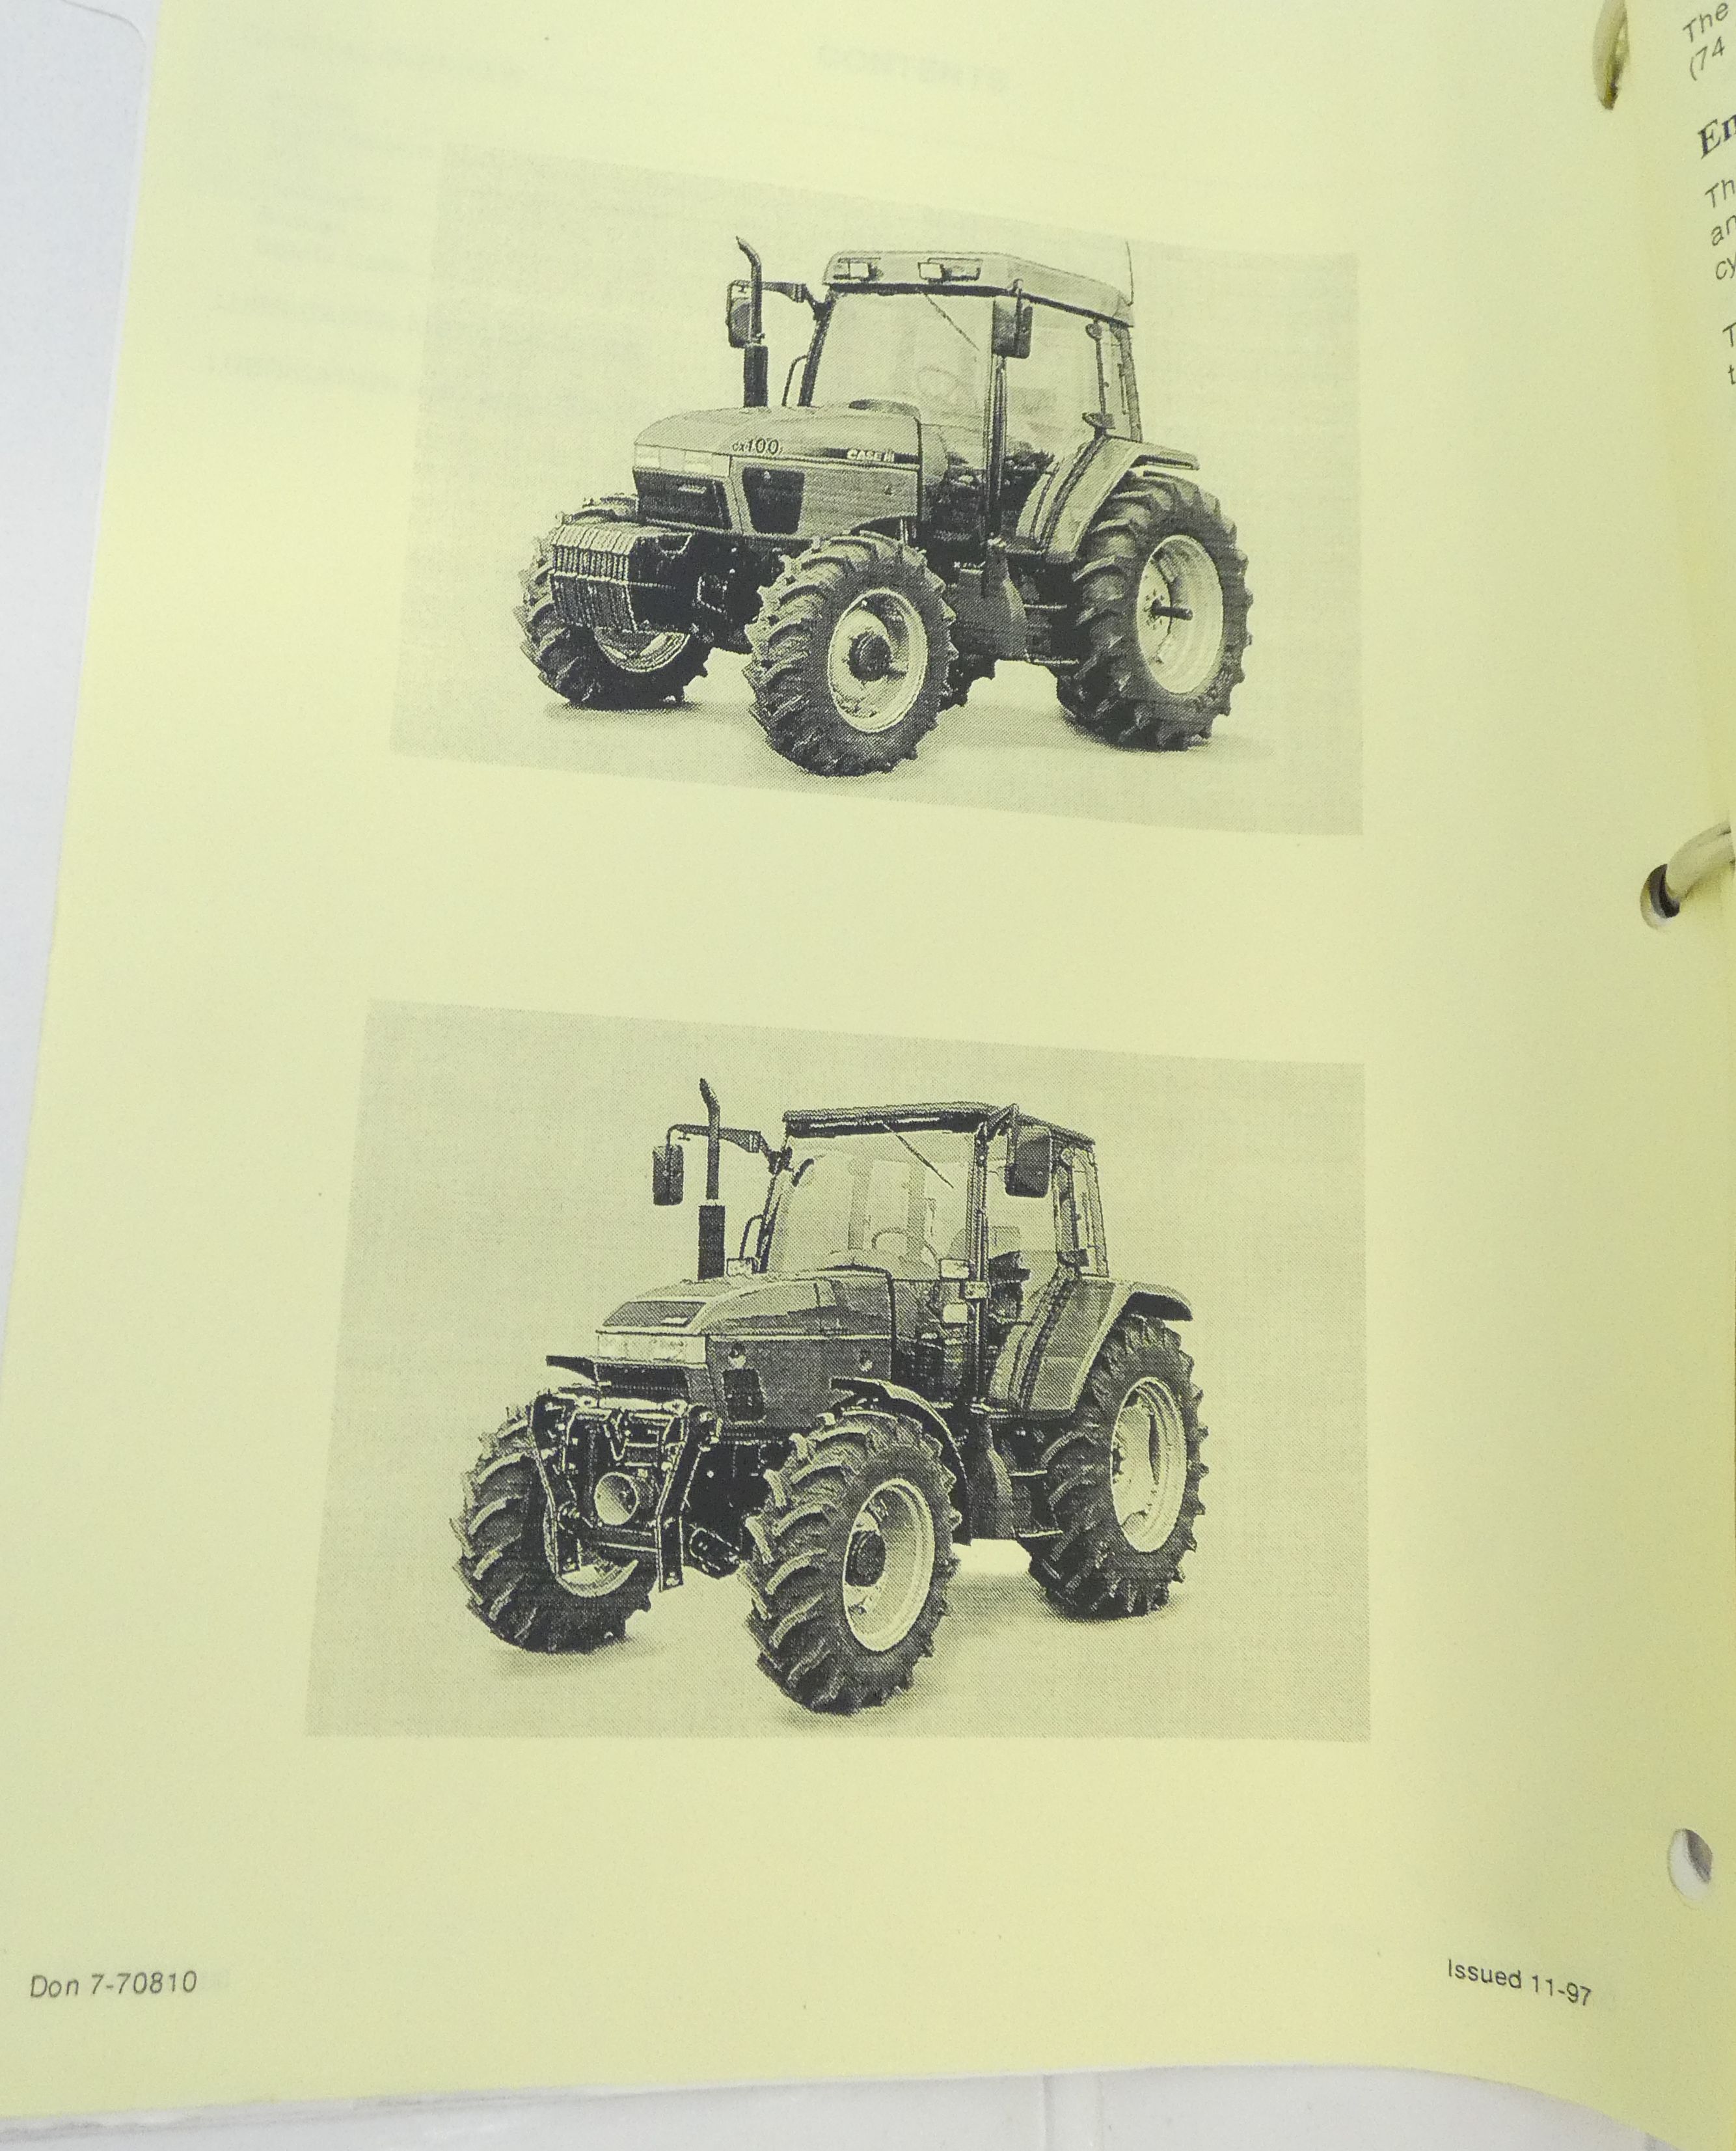 CaseIH CX50, CX60, CX70, CX80, CX90 and CX100 series tractors service manual